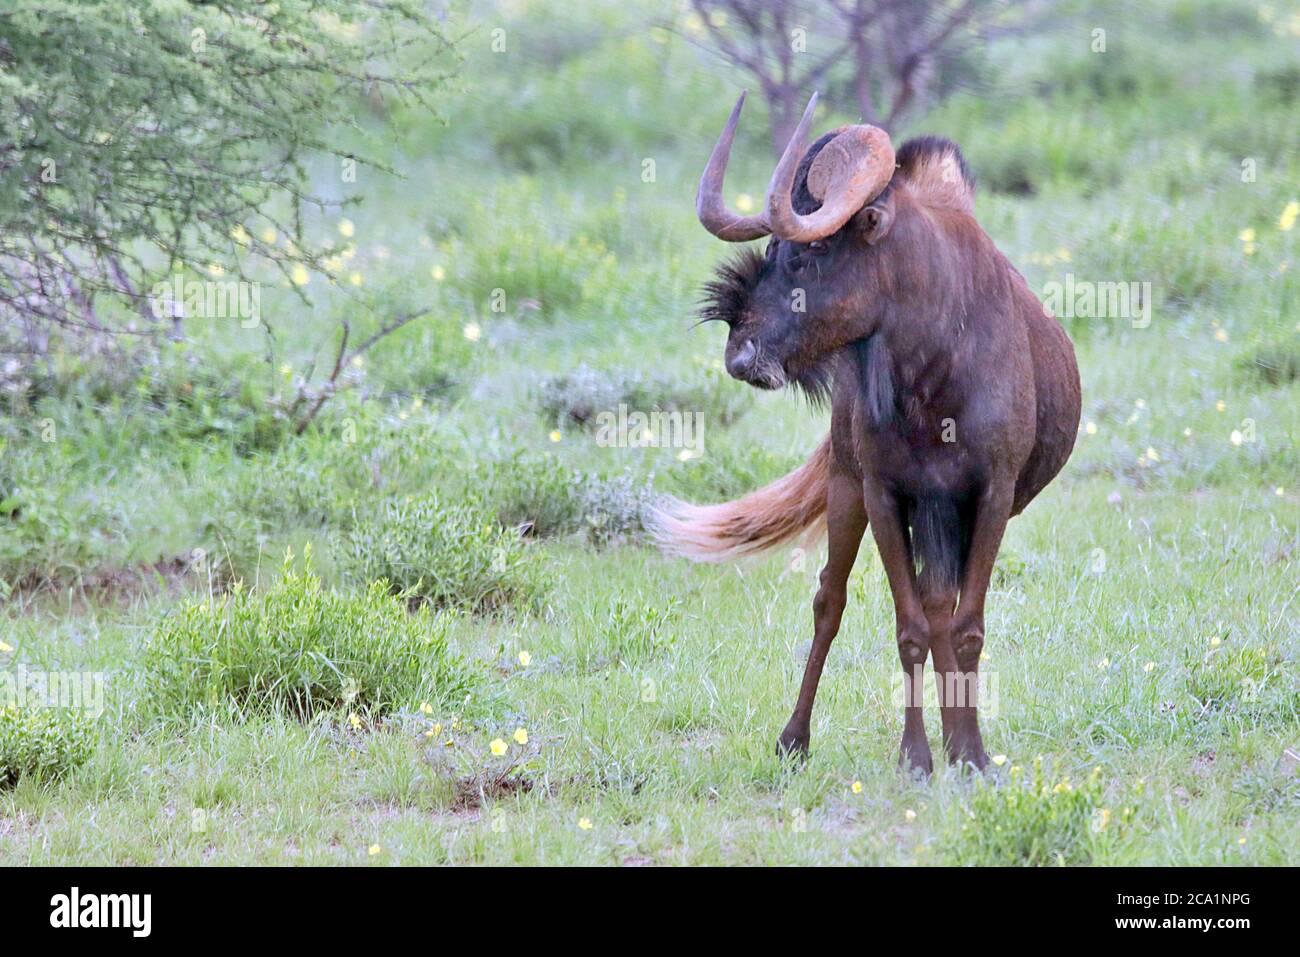 Un Wildebeest noir sauvage (Connochaetes gnou) debout dans la végétation pendant la saison des pluies à la réserve d'Erindi, région d'Erongo, Namibie. Banque D'Images